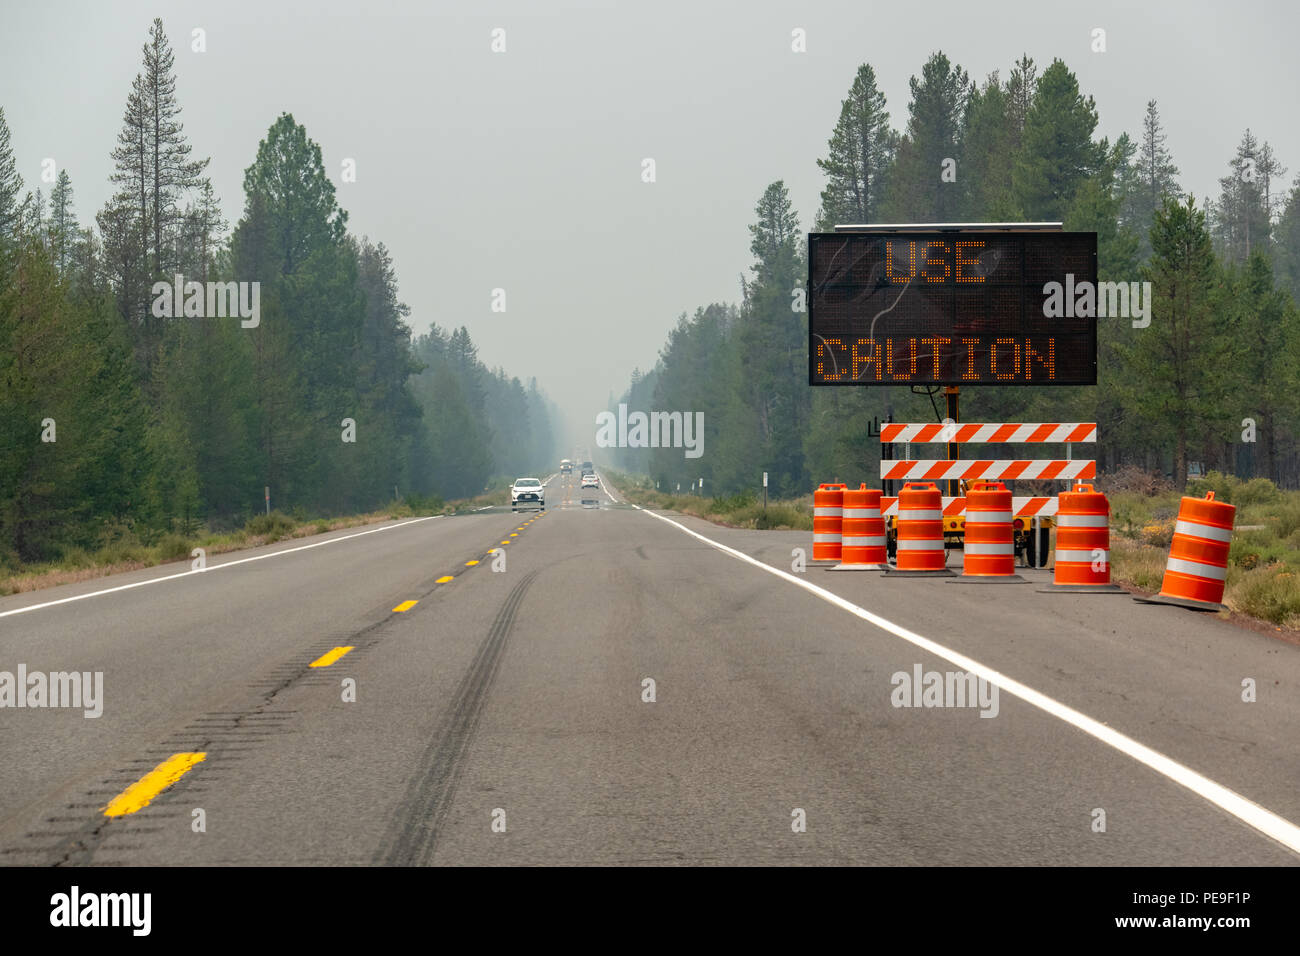 La autopista llena de humo de incendios en el sur de Oregon, firmar al lado de la carretera de 'Precaución'. Foto de stock